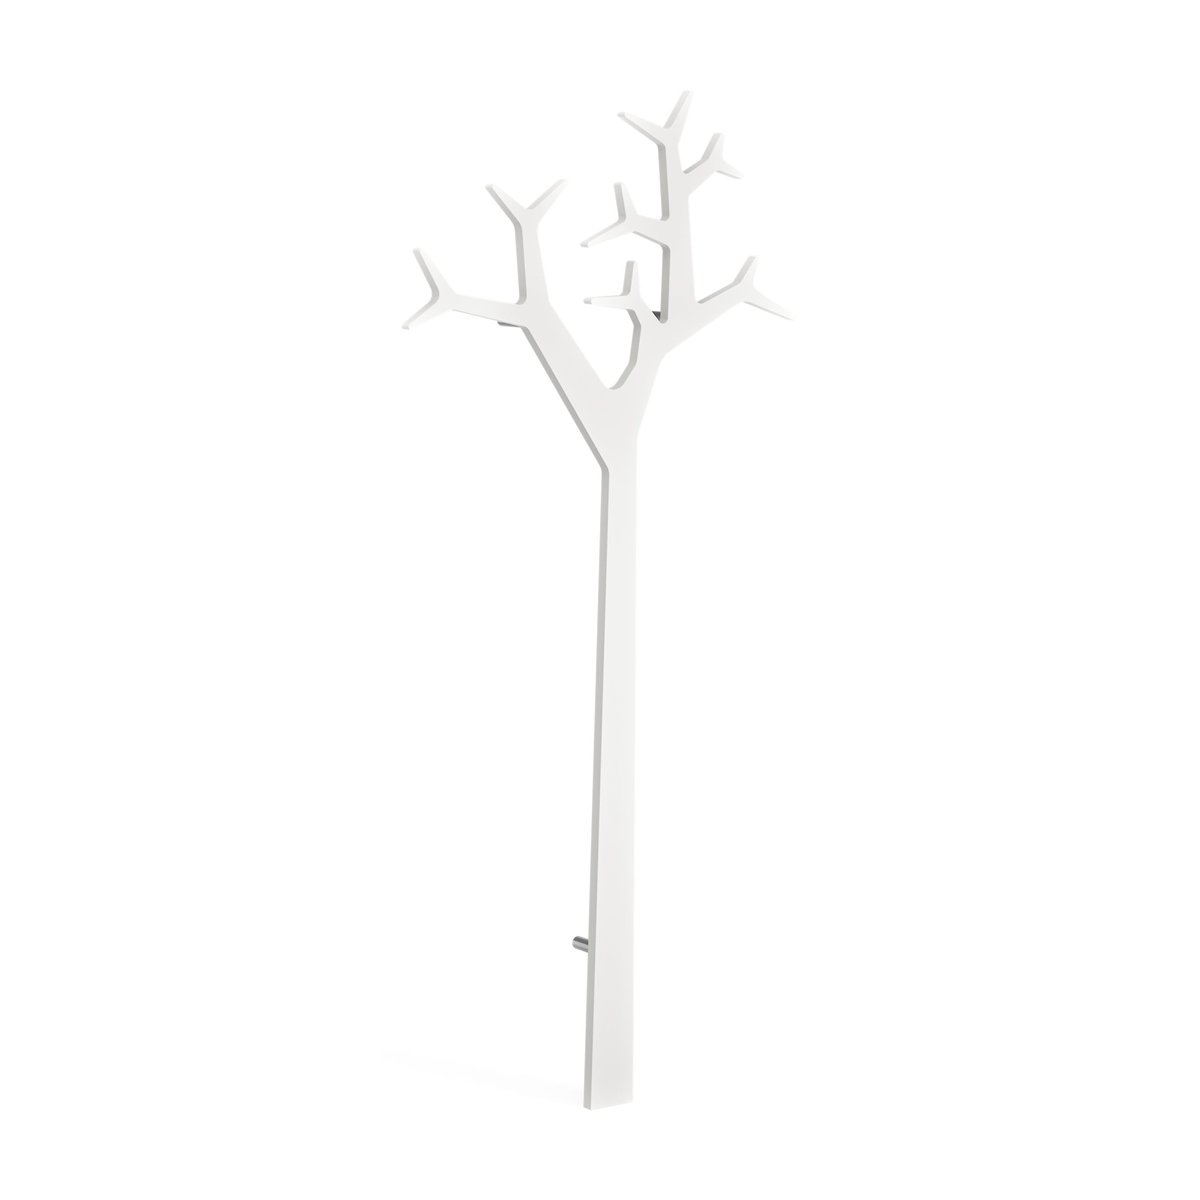 Swedese Tree takkinaulakko seinämalli 194 cm Valkoinen